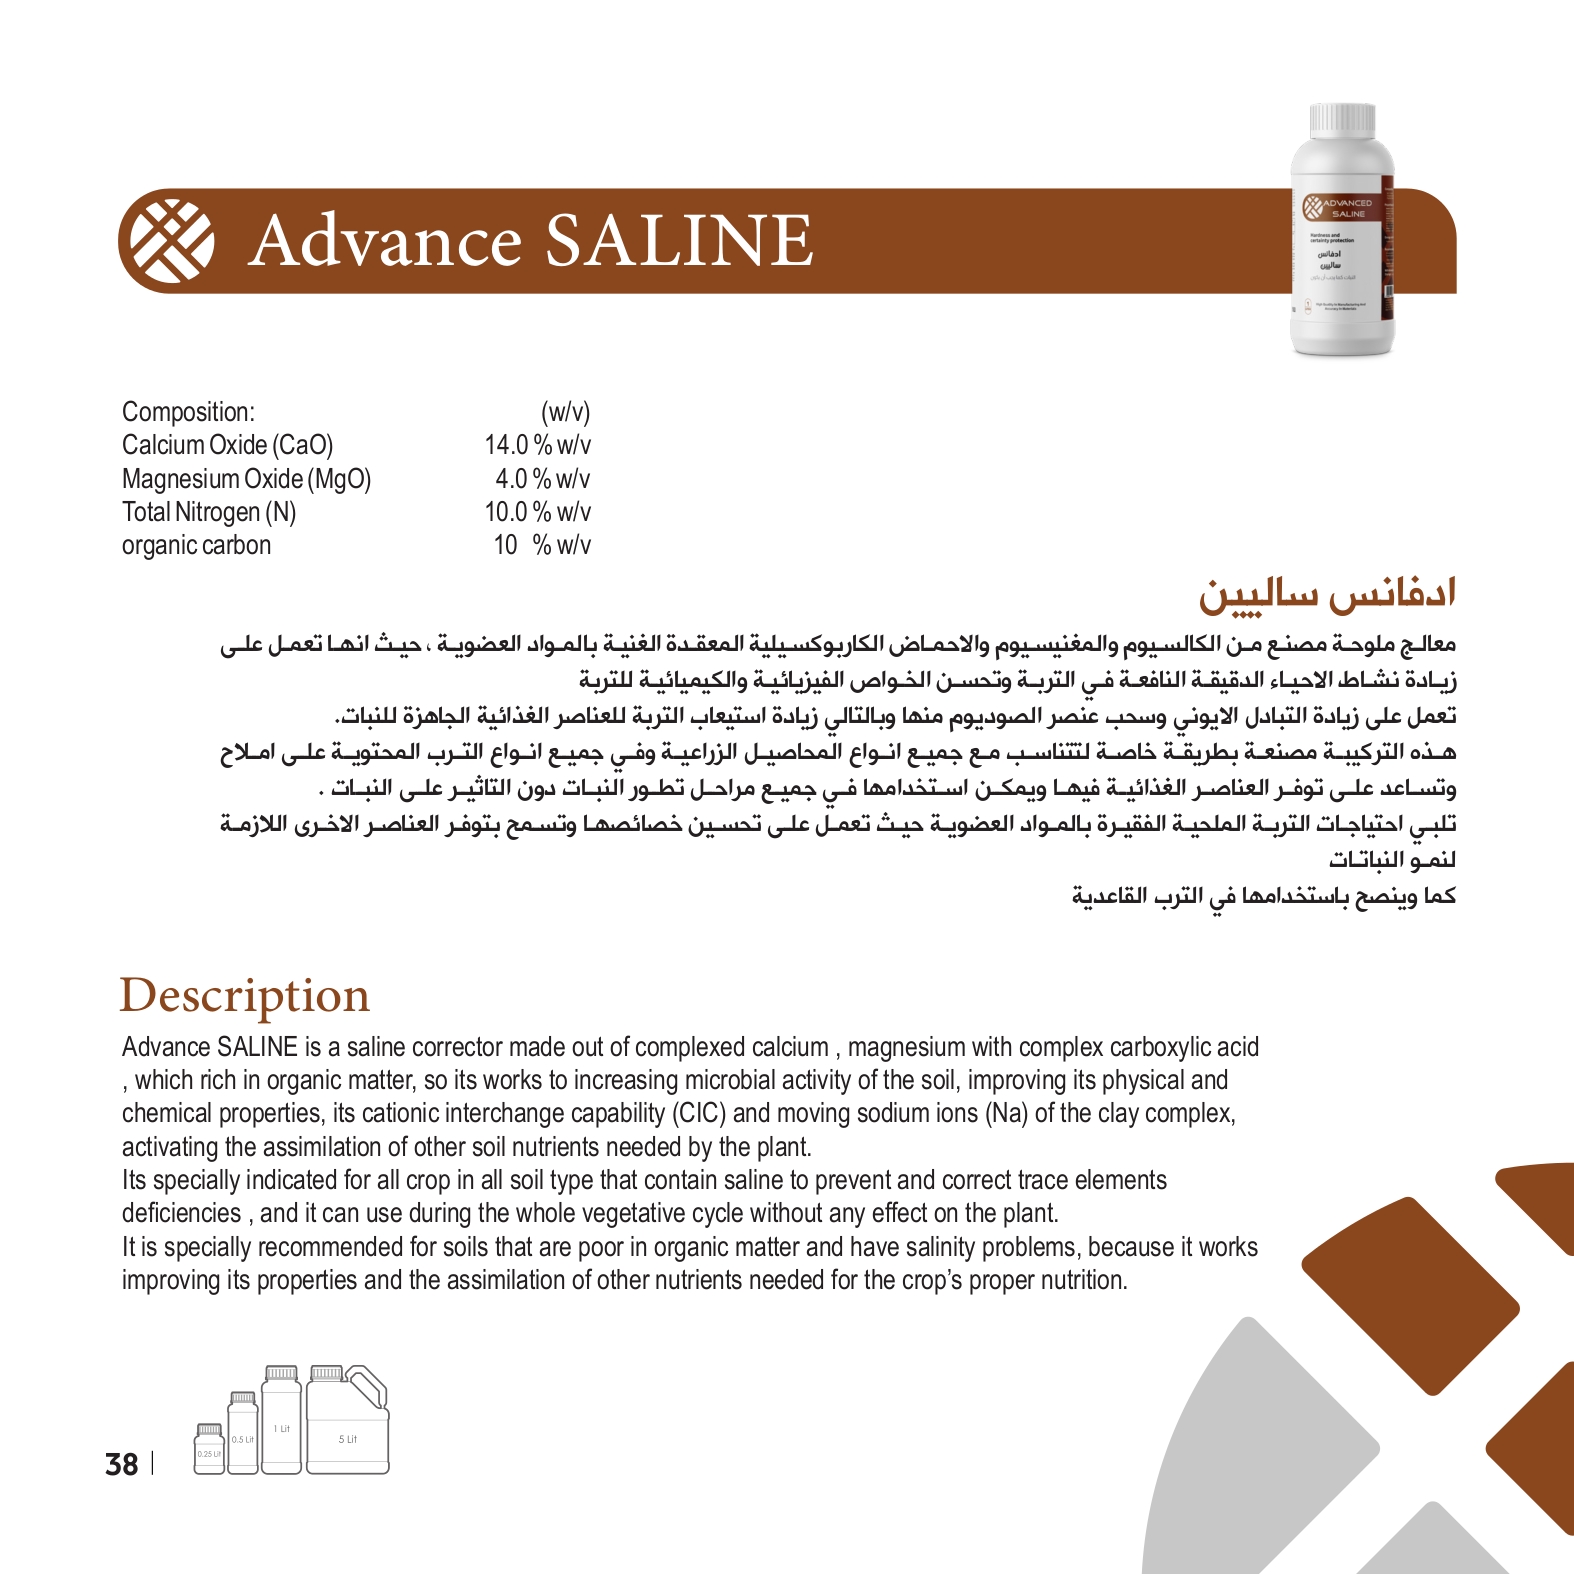 Advance SALINE